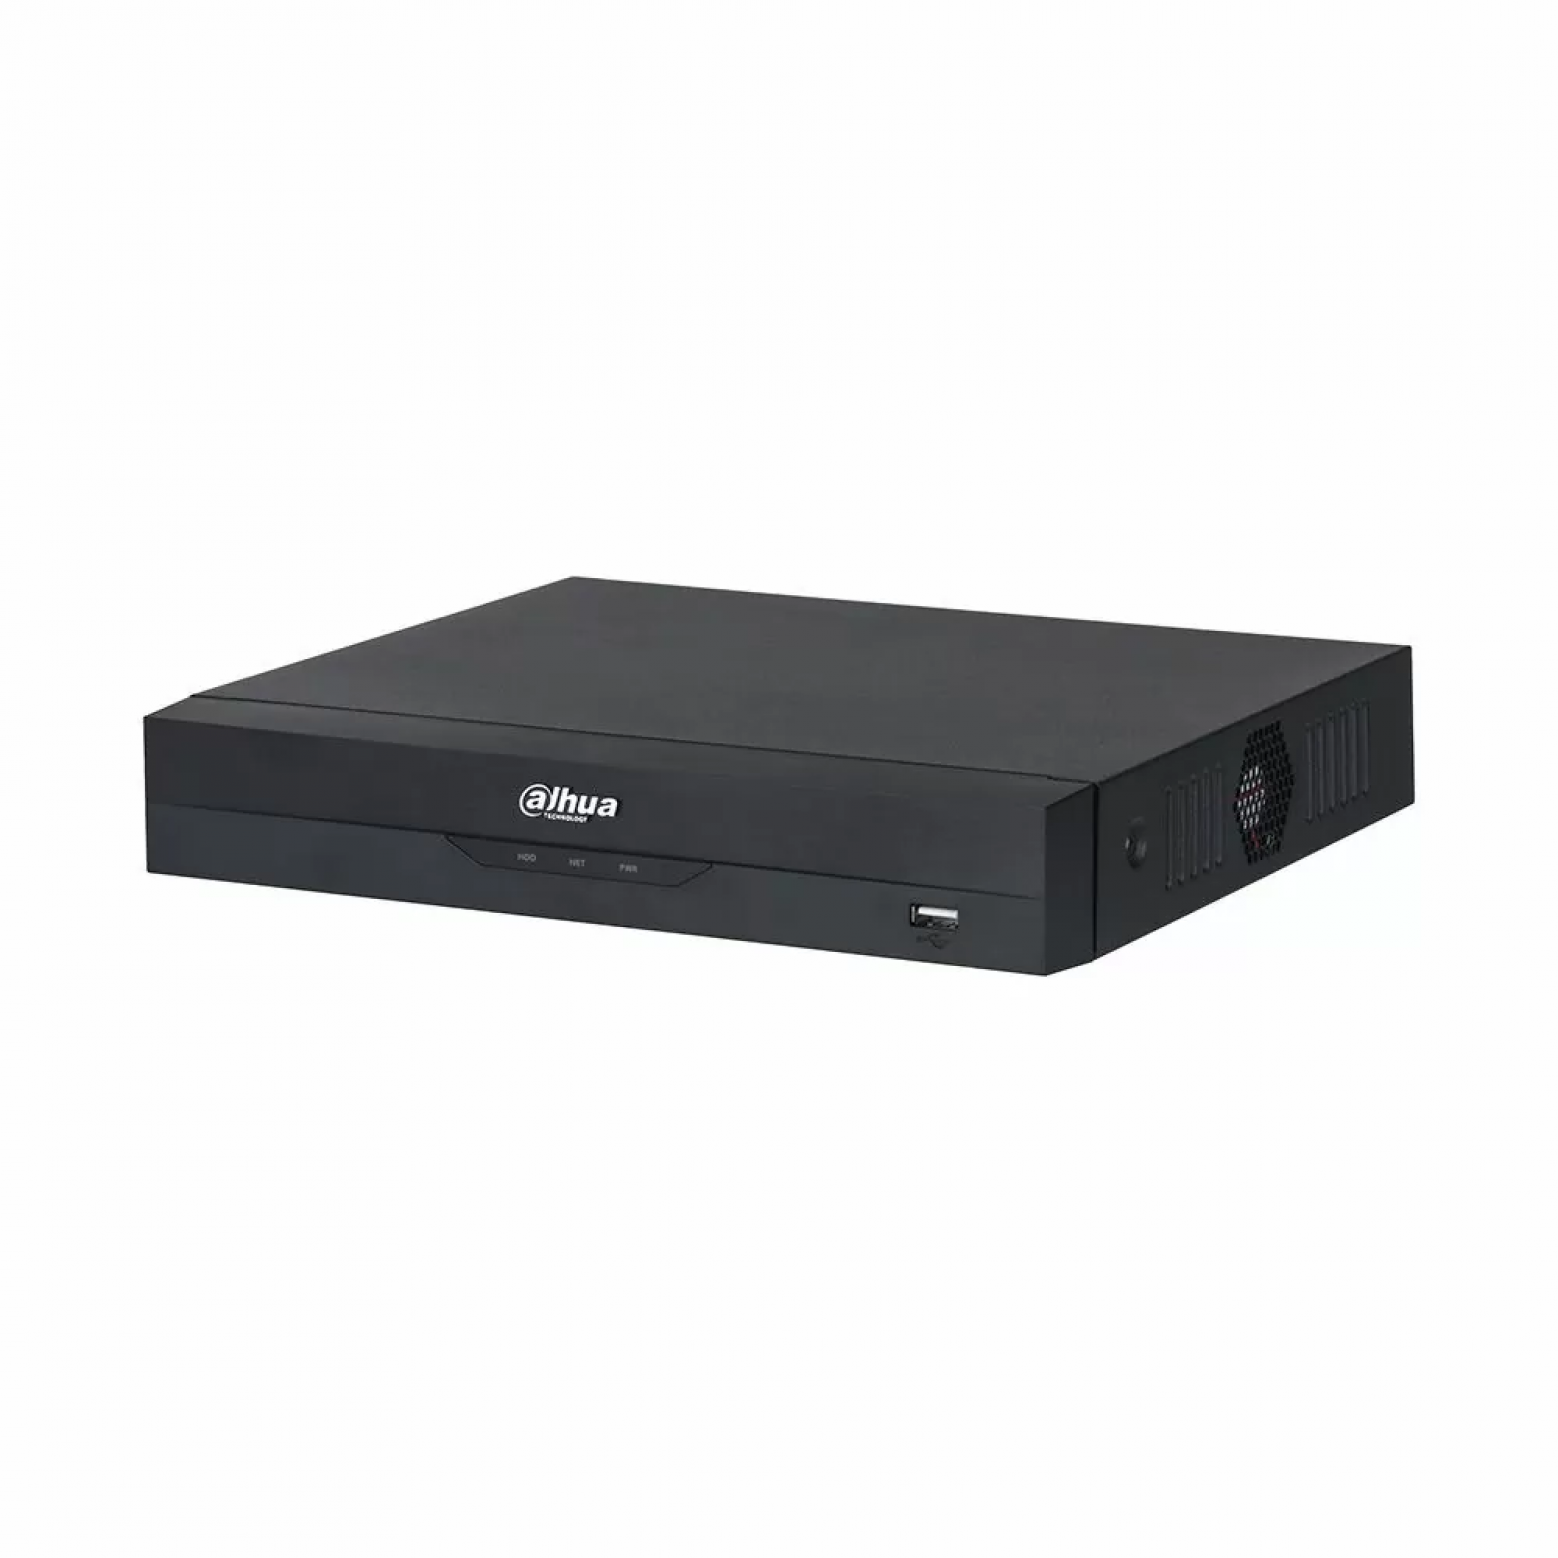 Dahua DHI-NVR4104HS-P-EI - Netværksvideooptager - Wiszense - 1x LAN - 4x PoE - 4 IP-kameraer